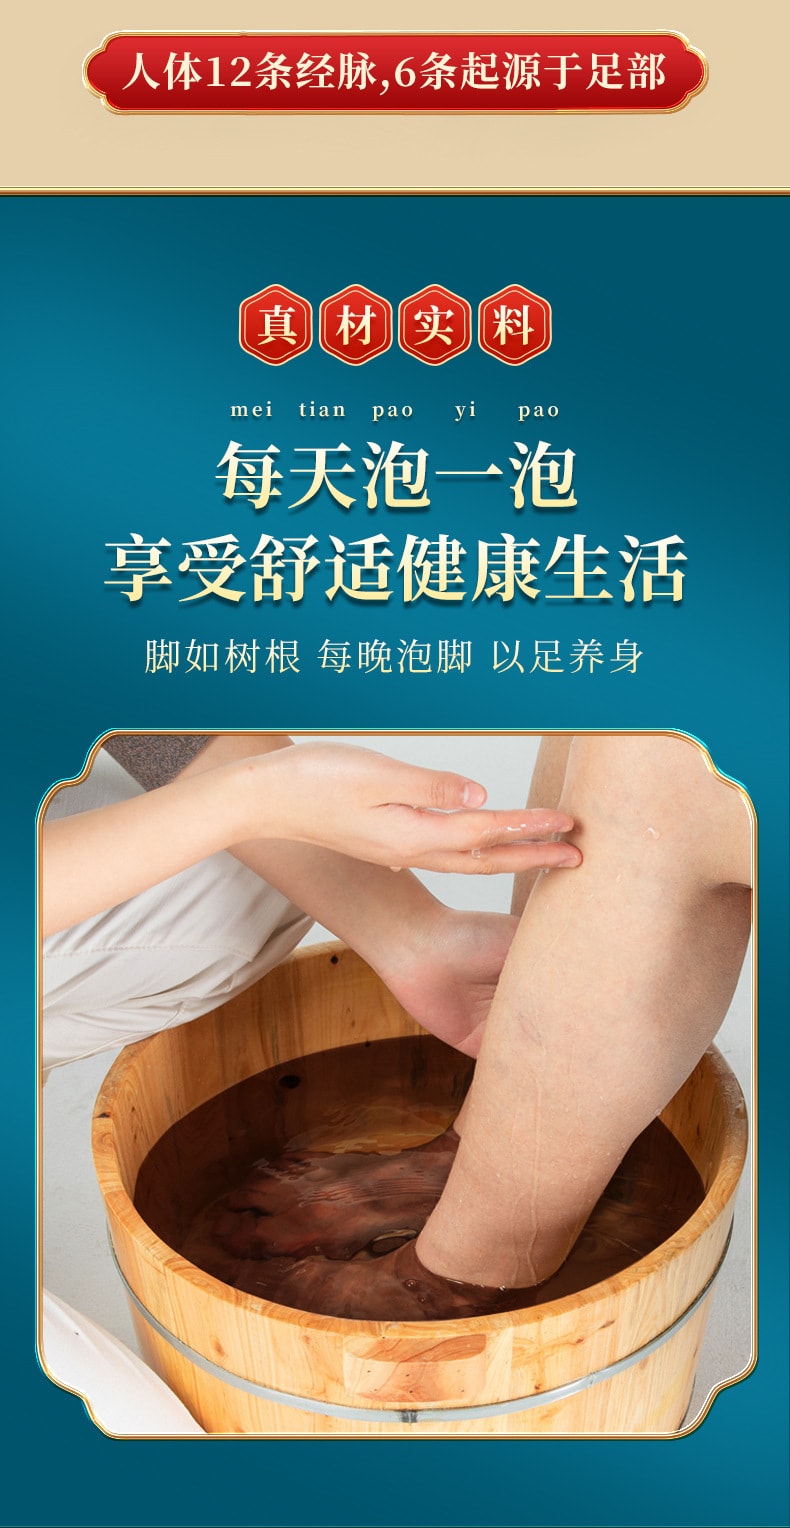 中國 四時醫 排濕足浴泡腳包 300克 (10克*30包) 十四味中藥 精心調配